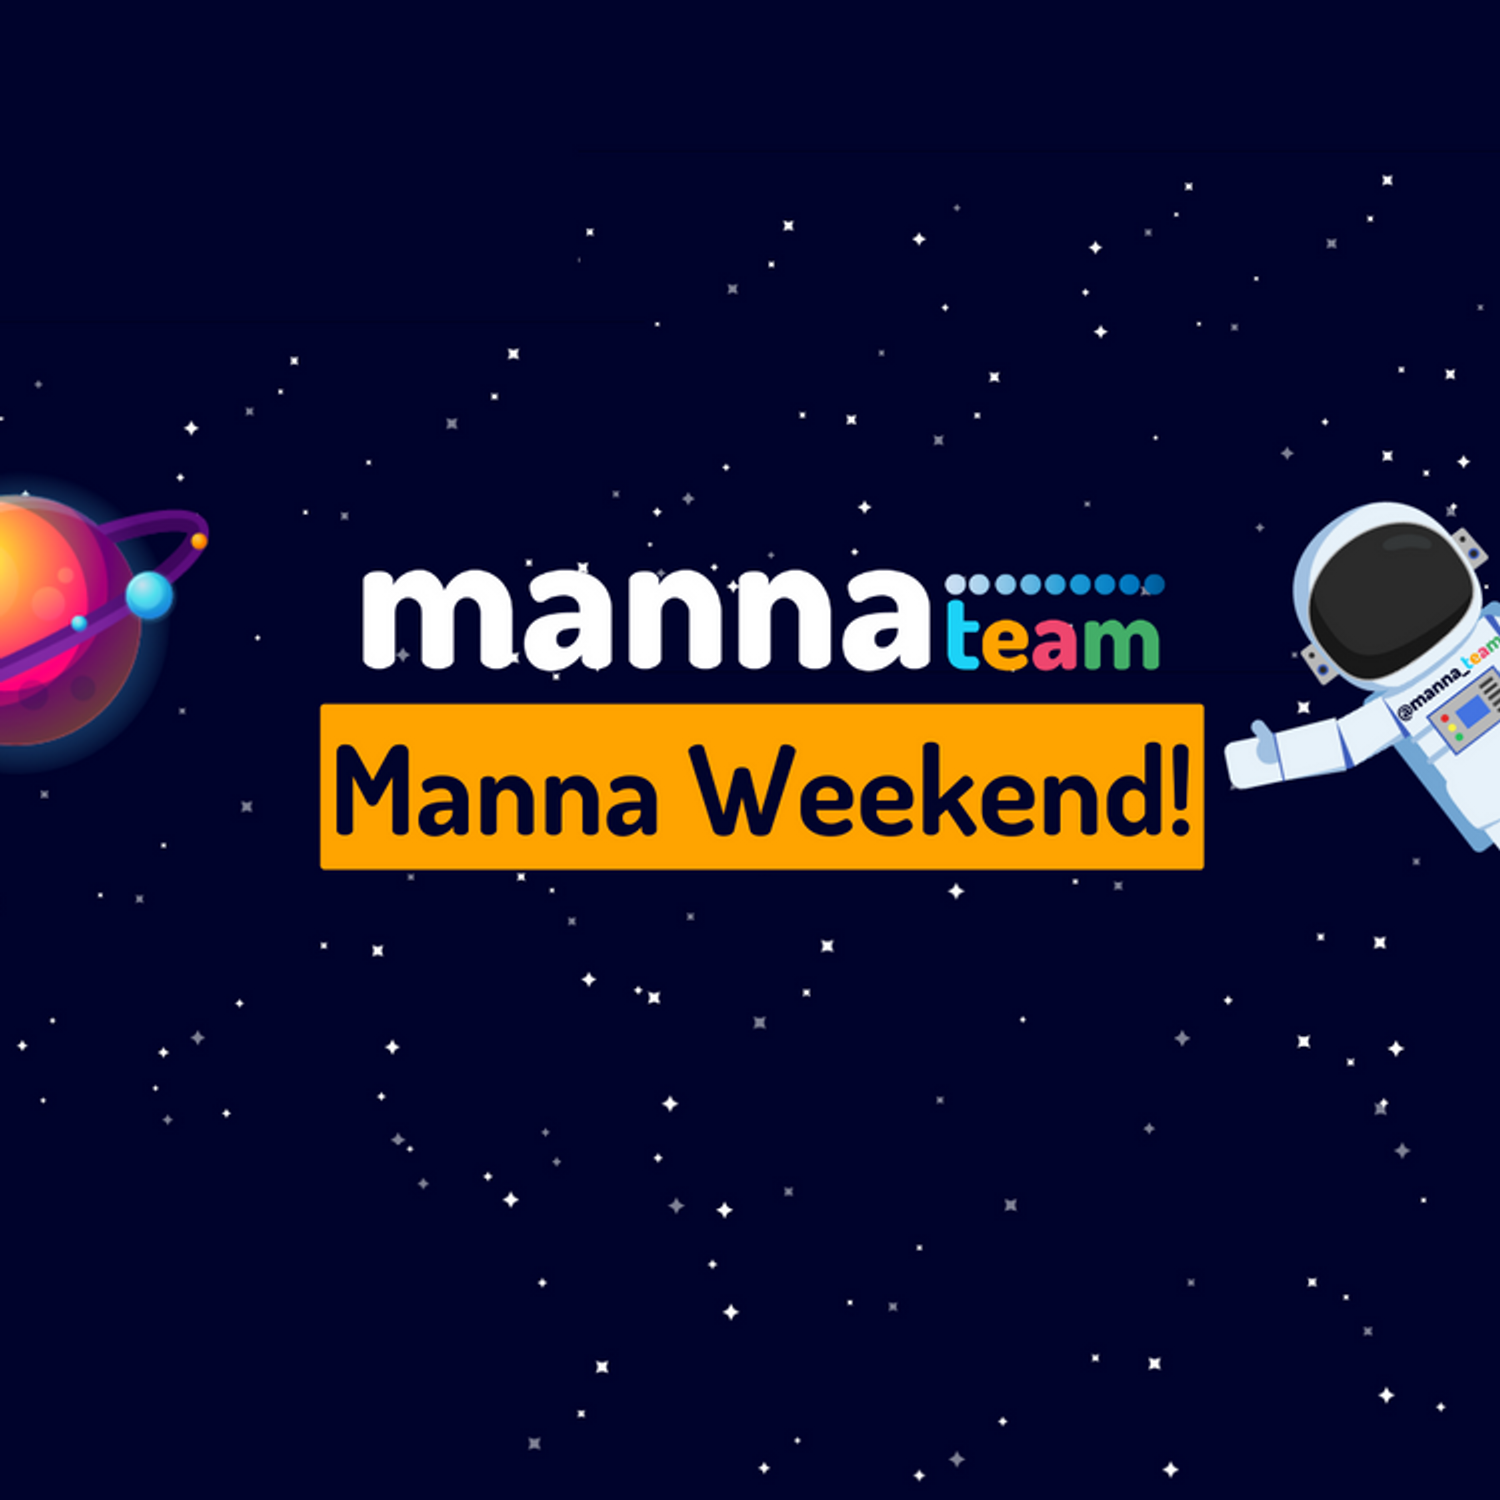 Manna Weekend: Veja os destaques do evento